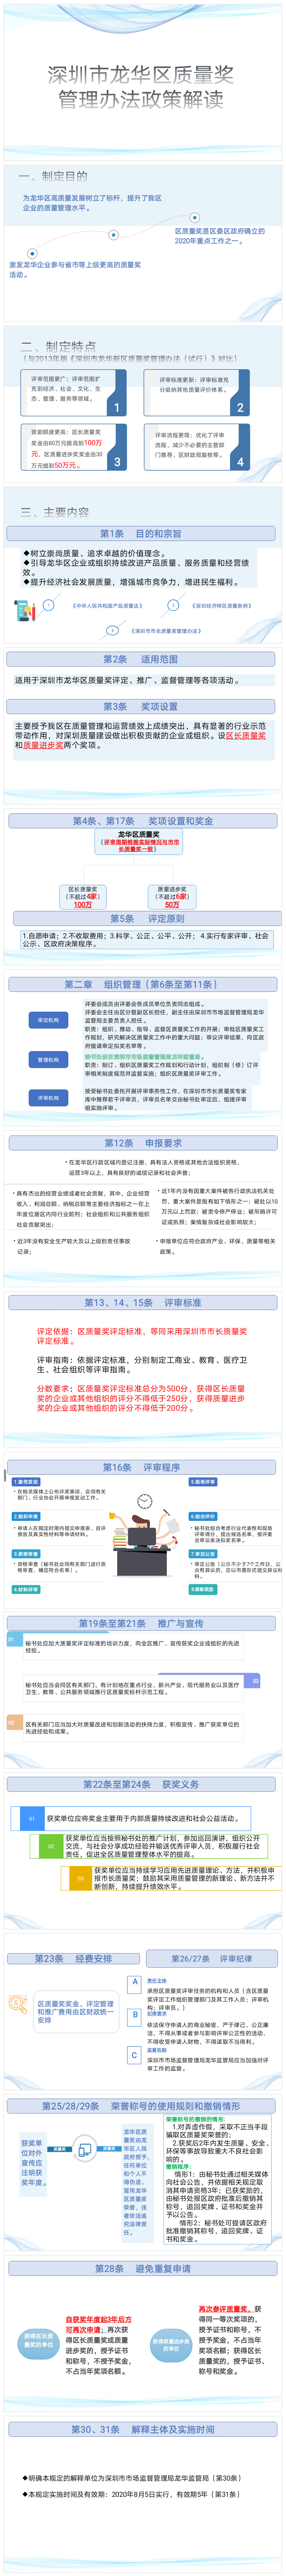 图解：《深圳市龙华区质量奖管理办法》(1).png